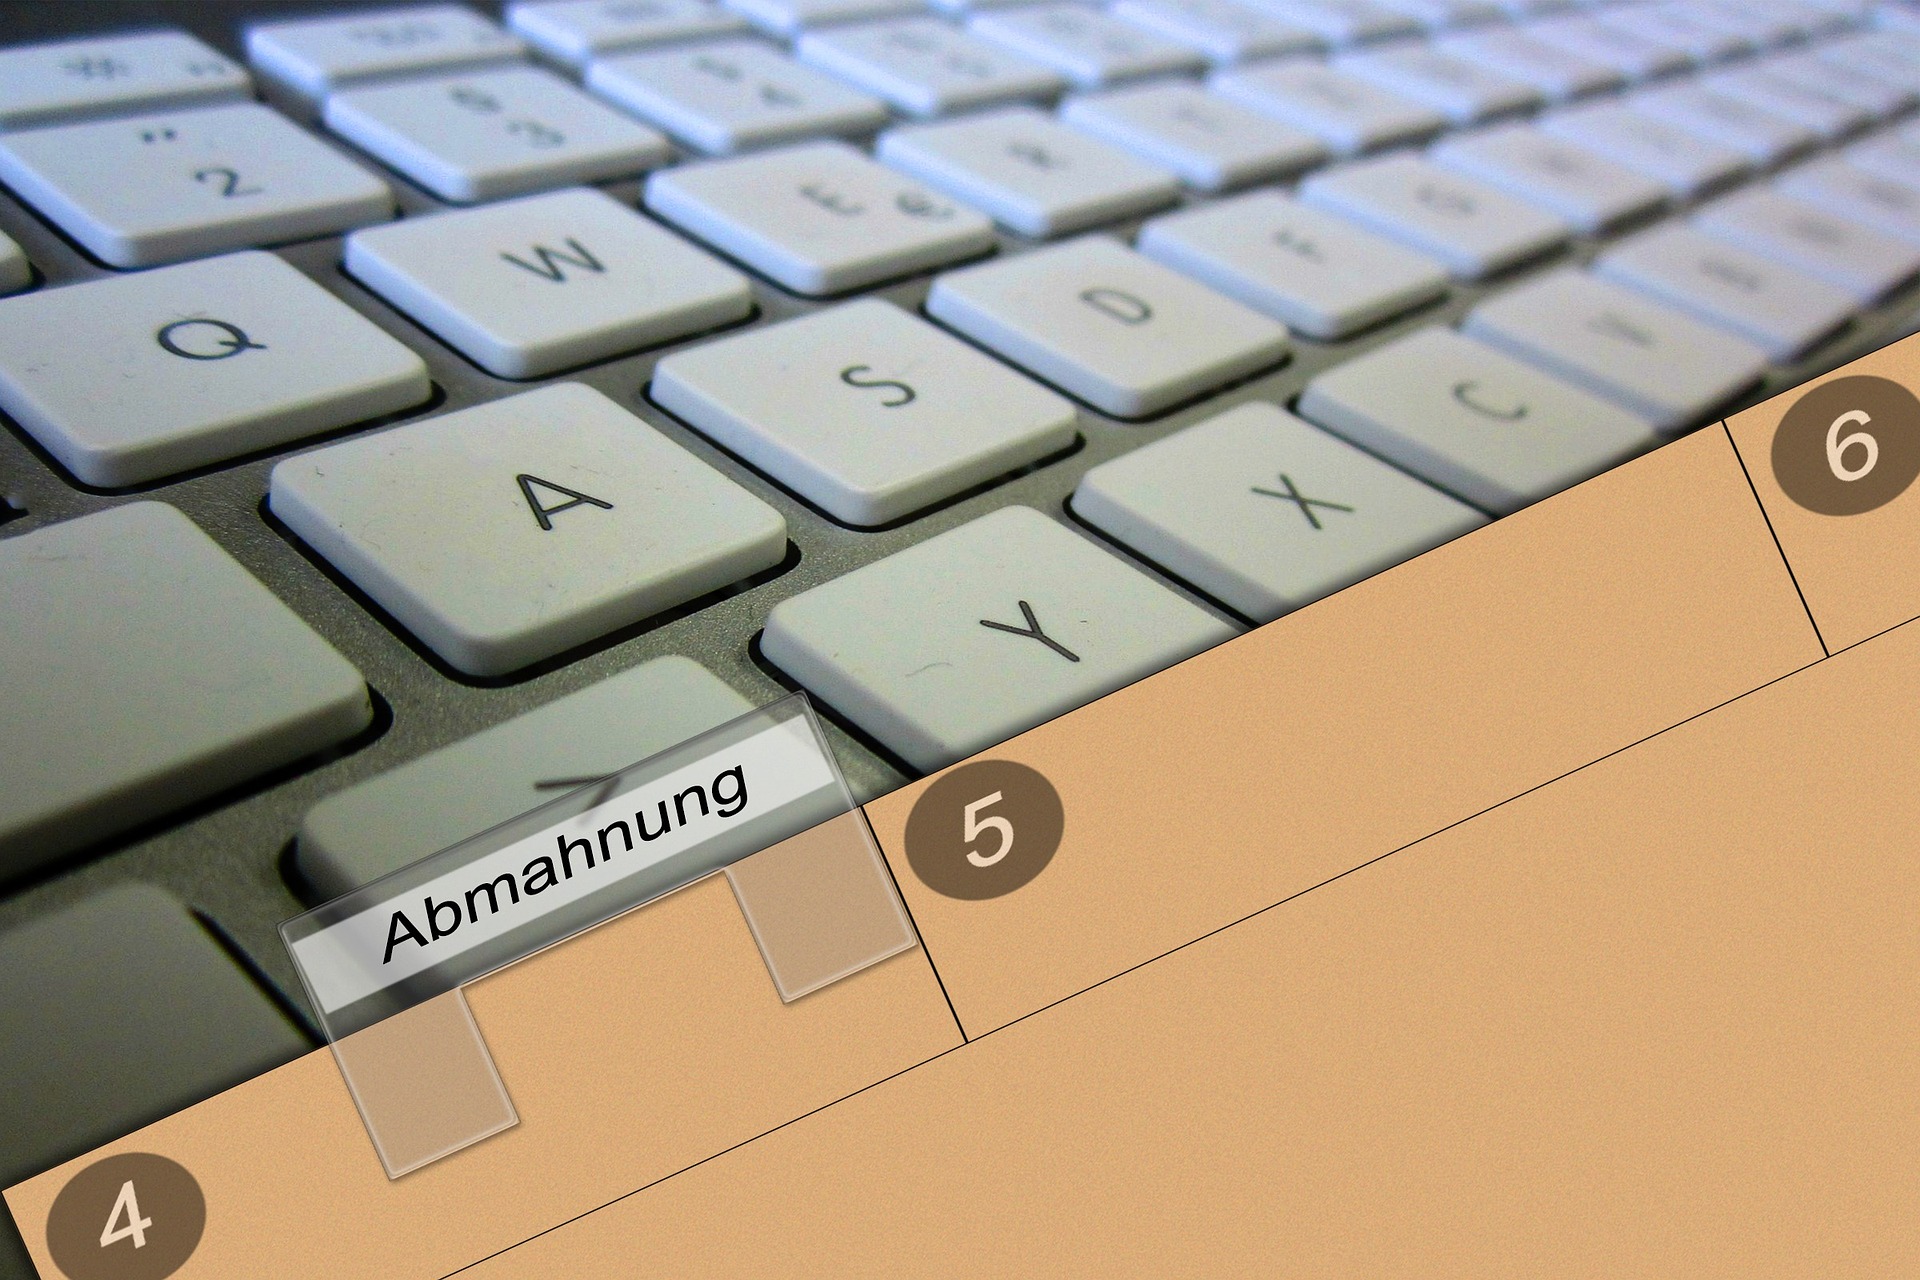 Nutzungsrechte verwalten Keyboard mit Ordnermappe im Vordergrund